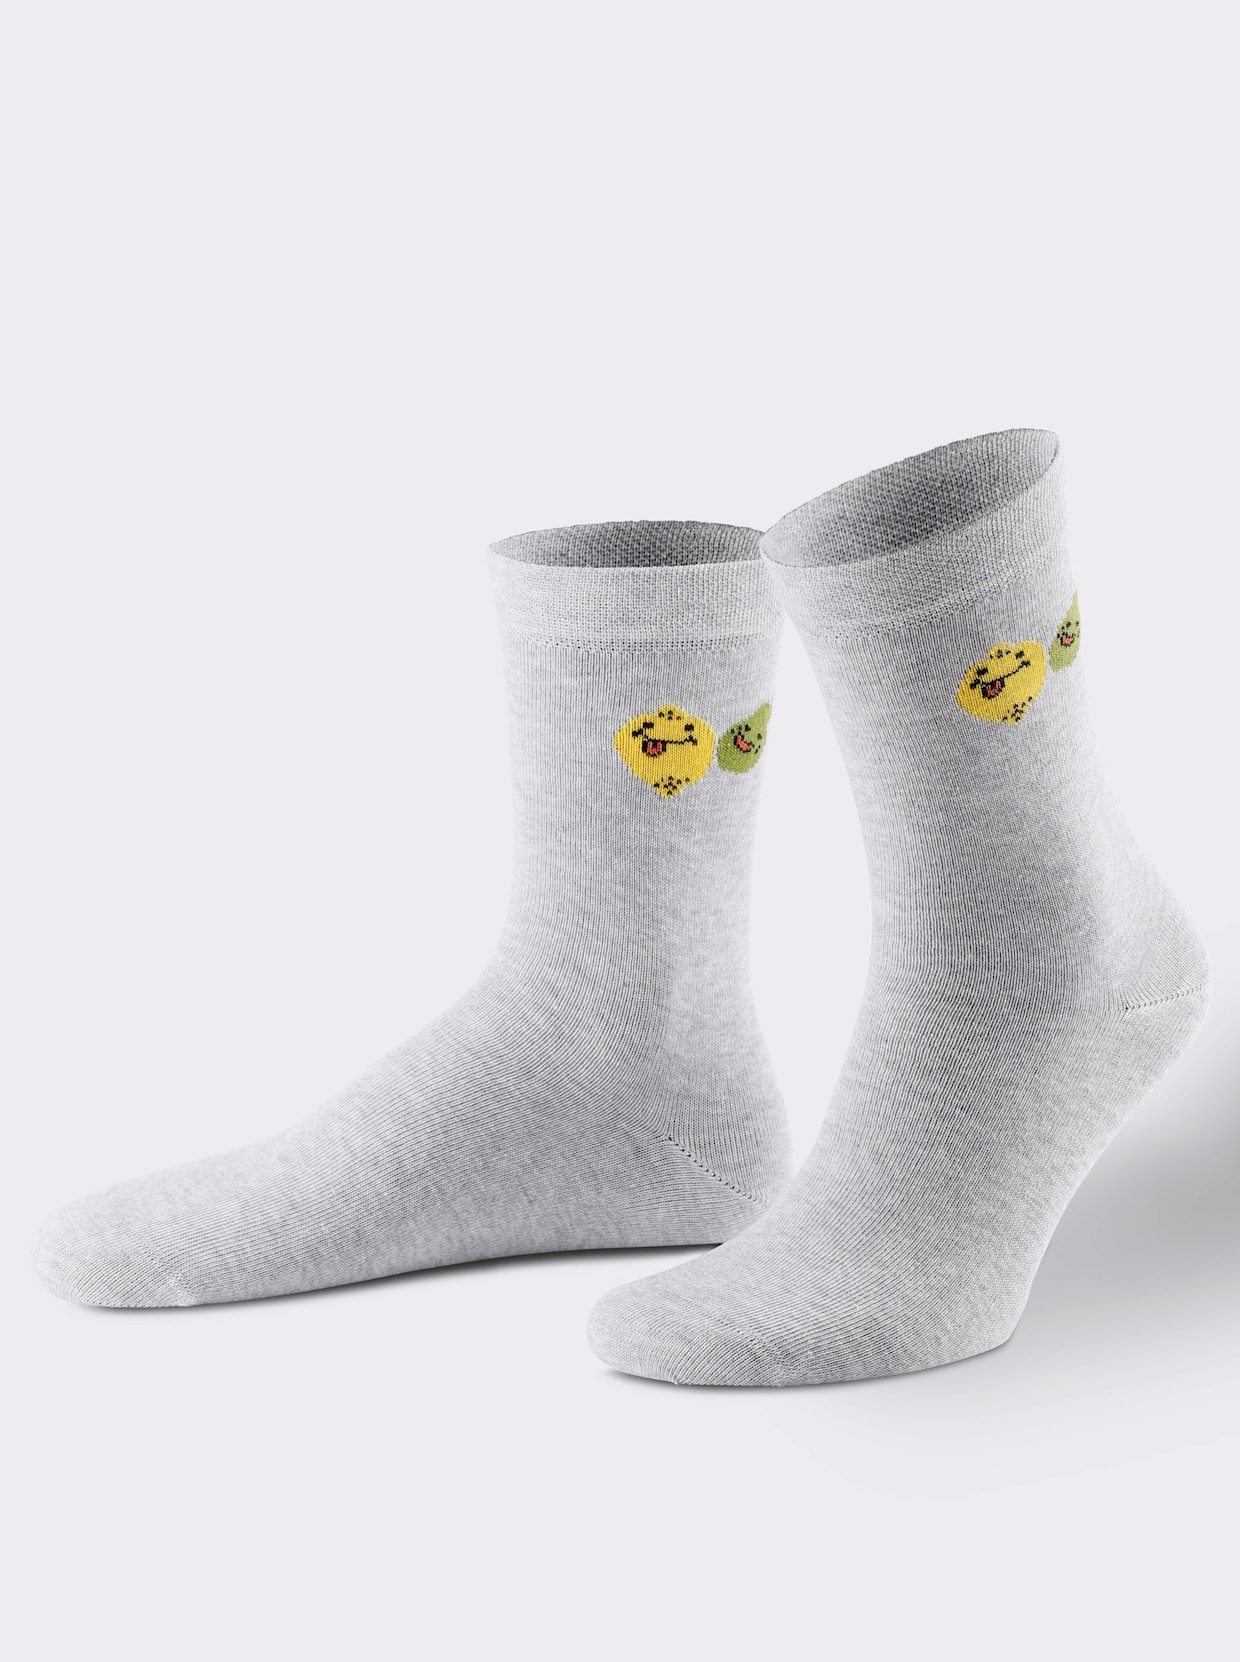 wäschepur Damen-Socken - hellgrau-meliert-weiß